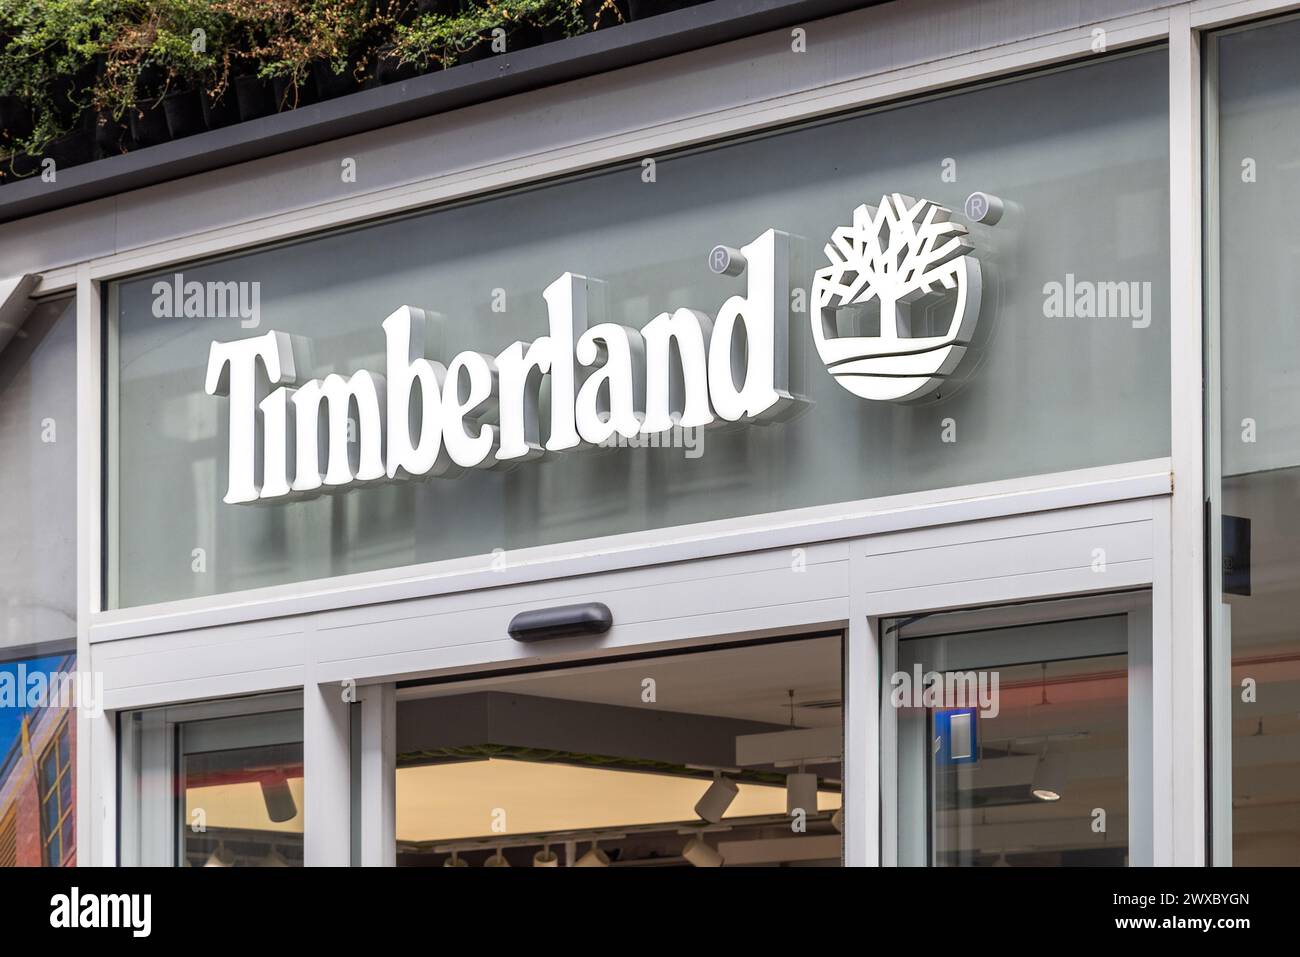 Dettaglio della segnaletica del marchio e del logo di un negozio Timberland. Dettaglio di un cartello Timberland Shop. Foto Stock